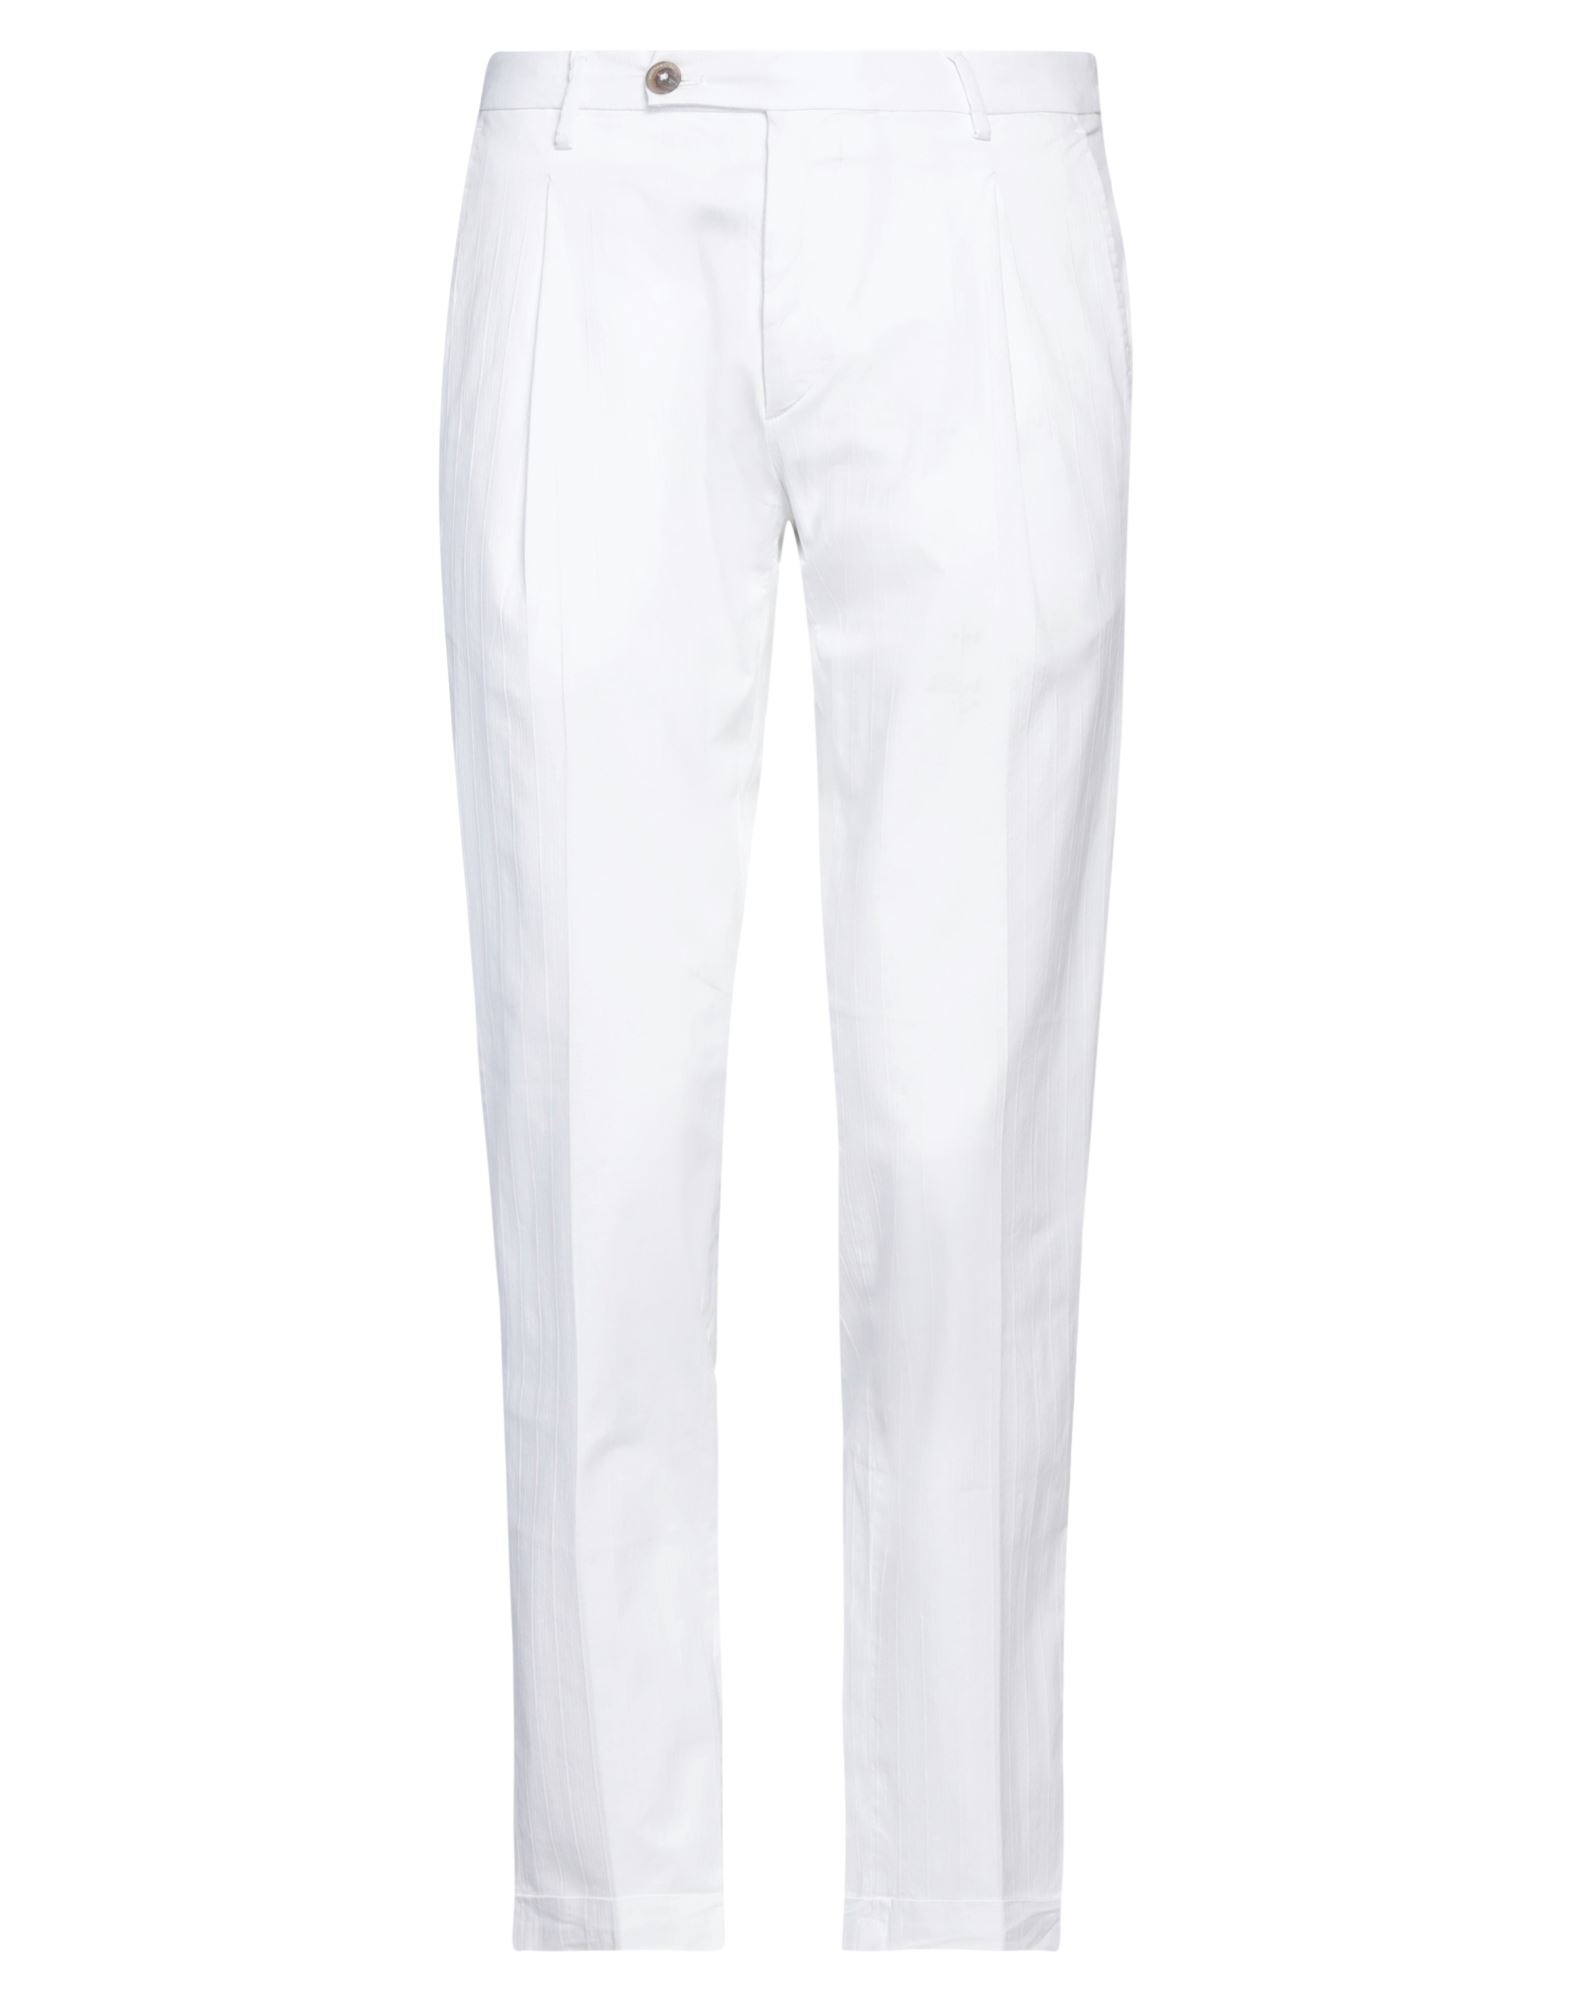 Shop Michael Coal Man Pants White Size 35 Cotton, Elastane